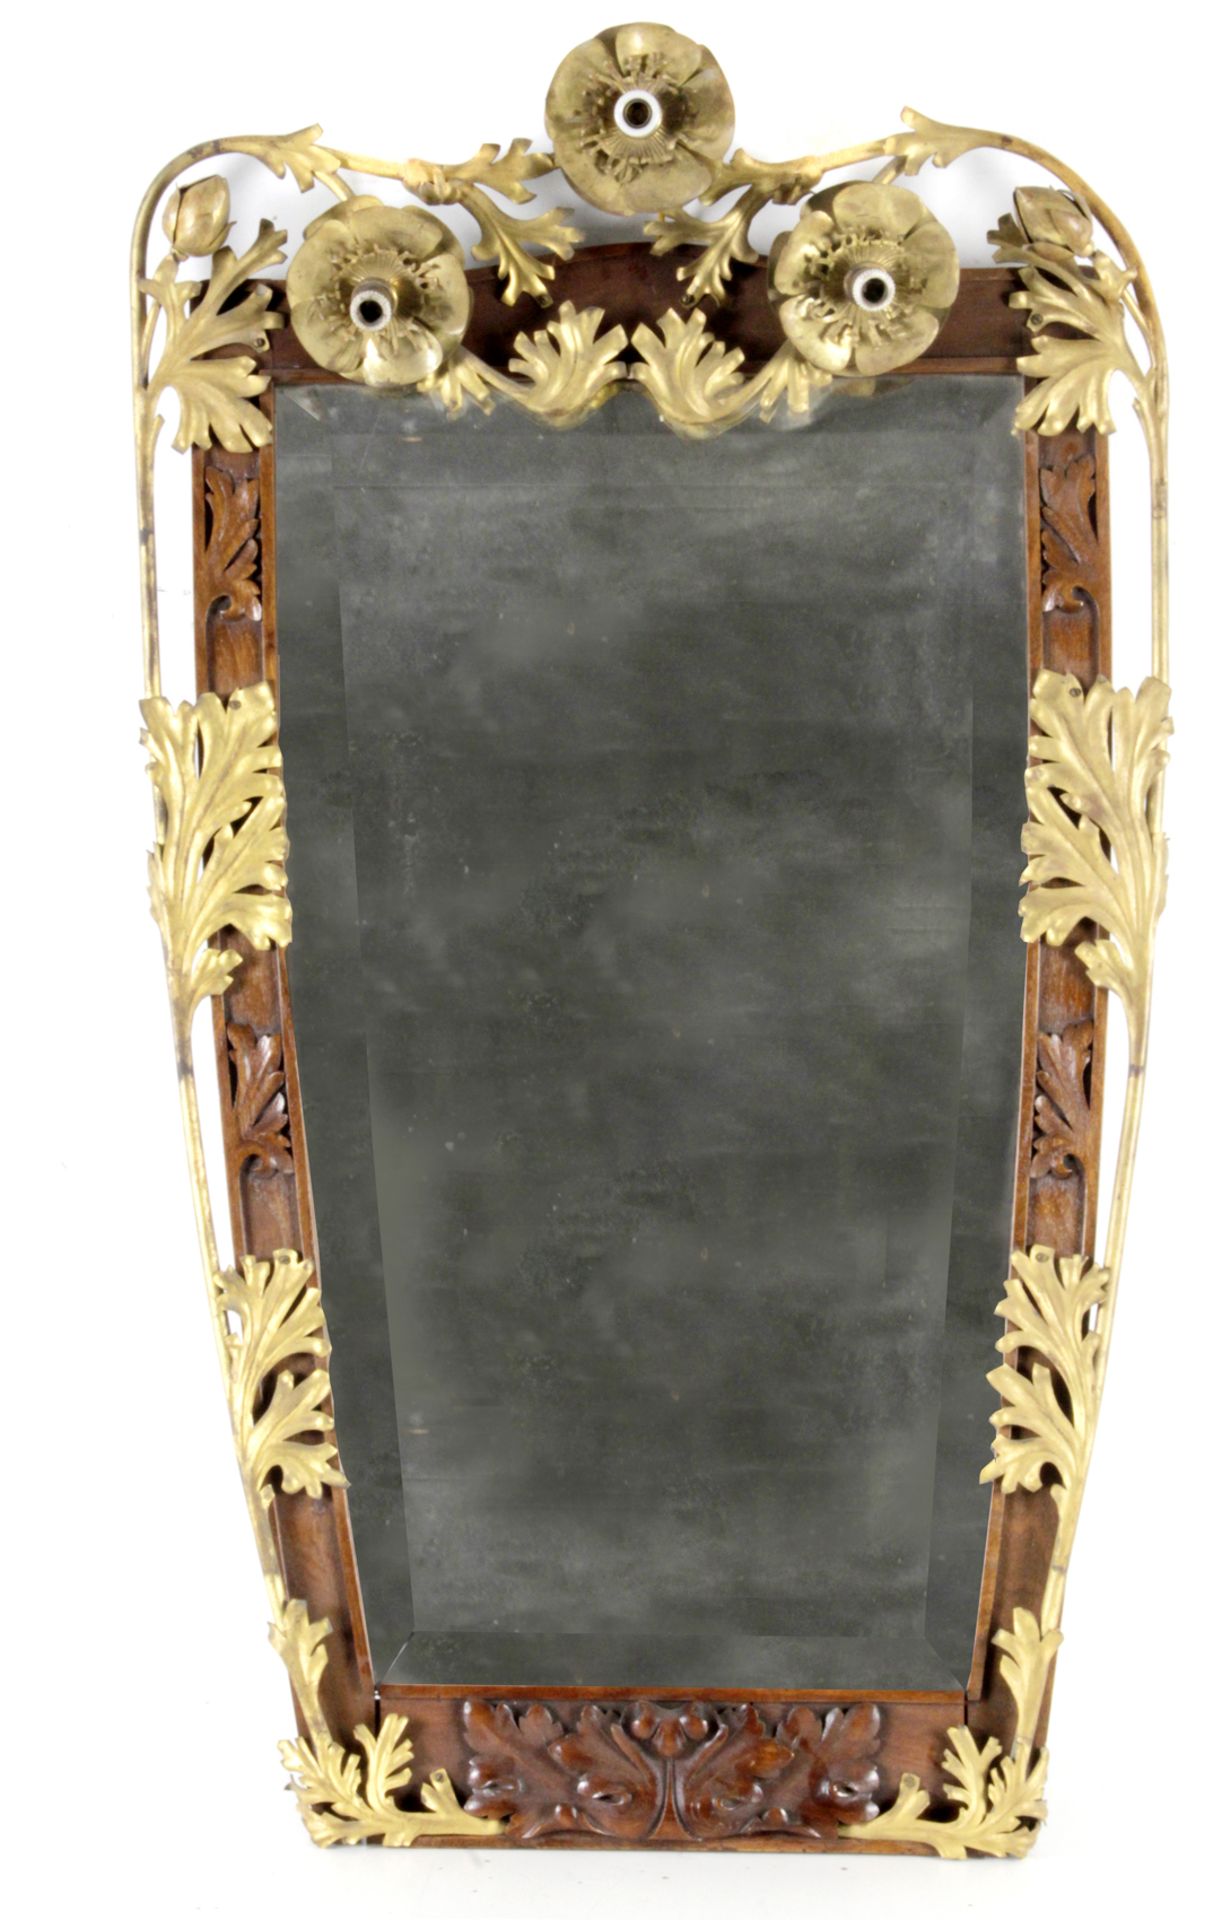 A 20th century modernist mirror